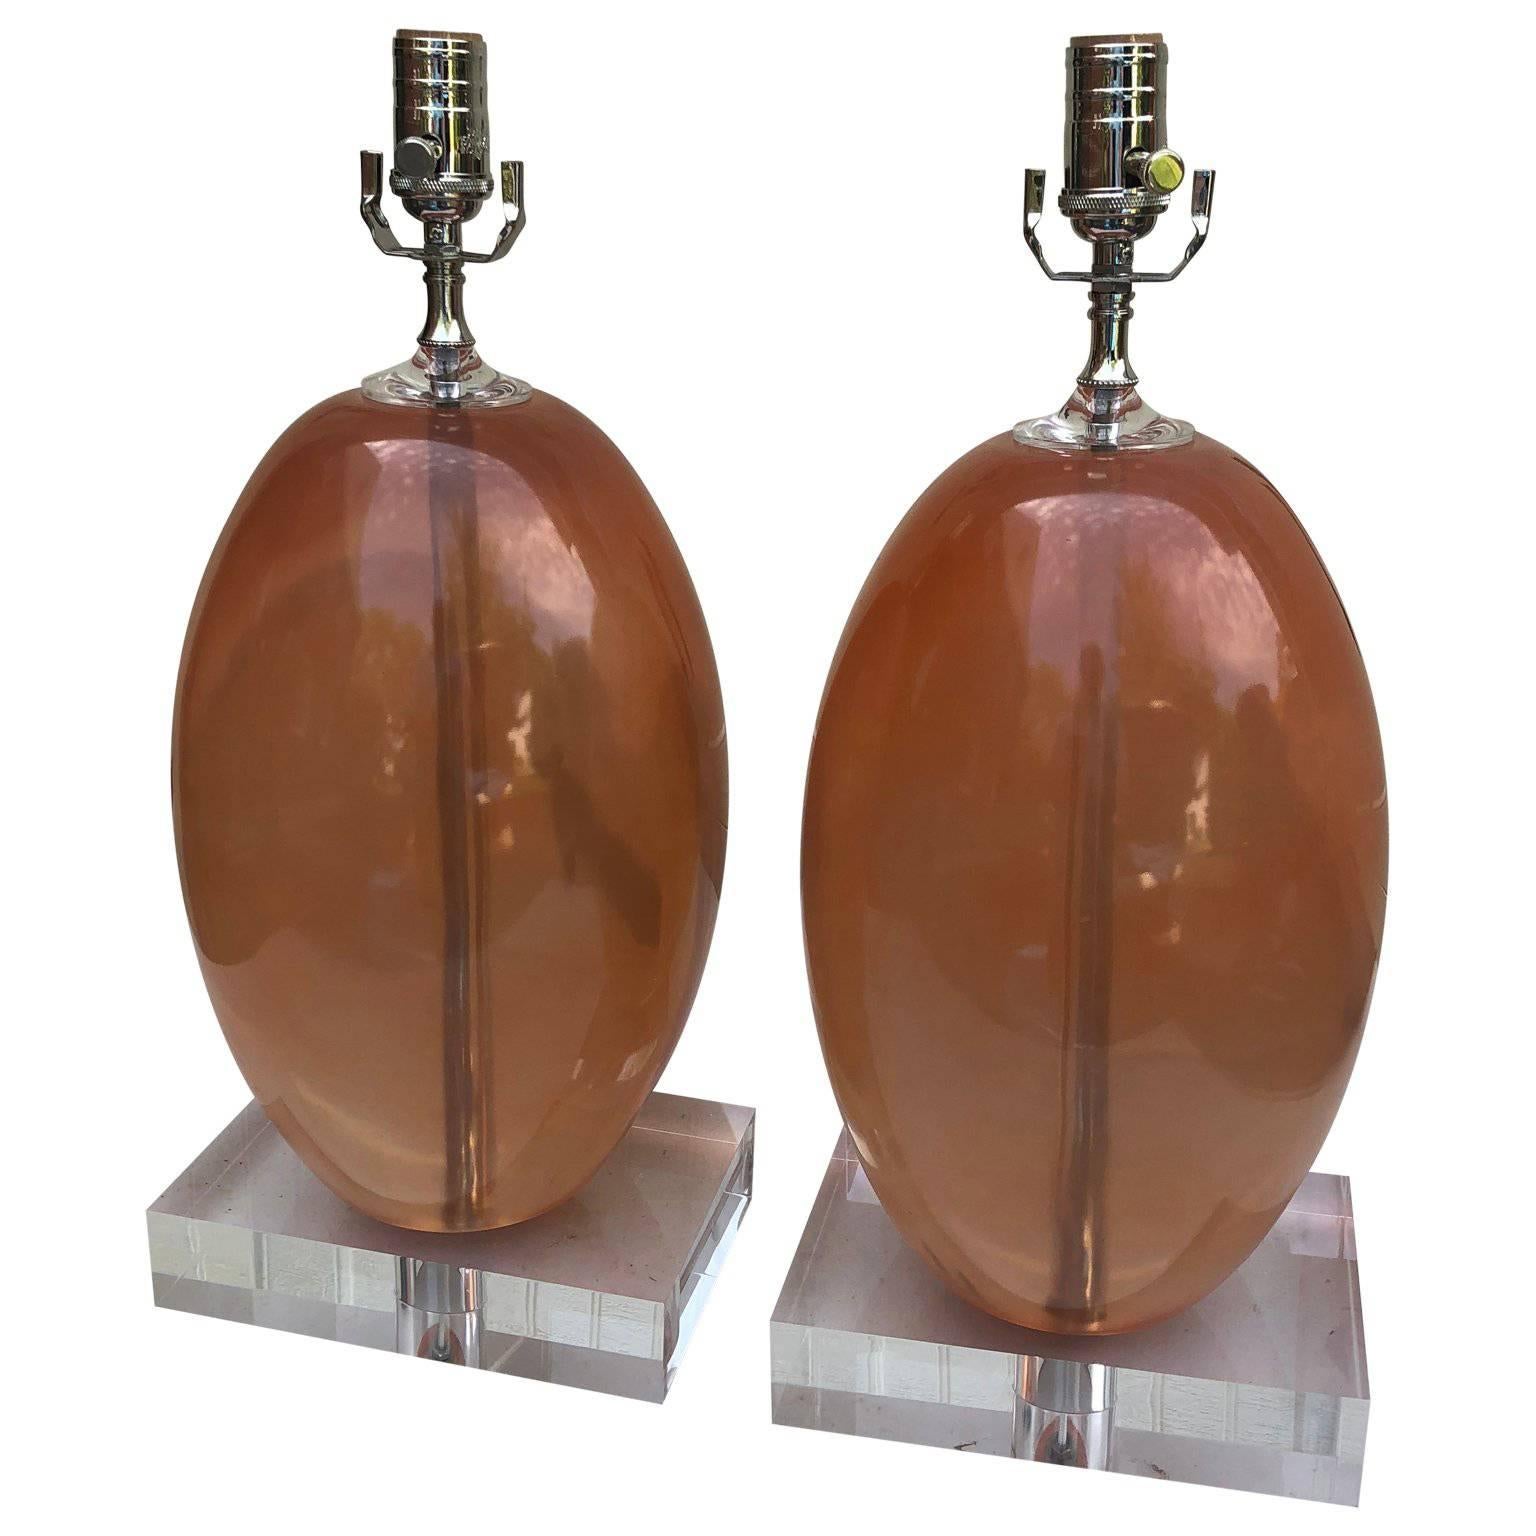 Paar schwere orangefarbene ellipsenförmige Tischlampen aus Harz auf dickem Lucite-Sockel.

             